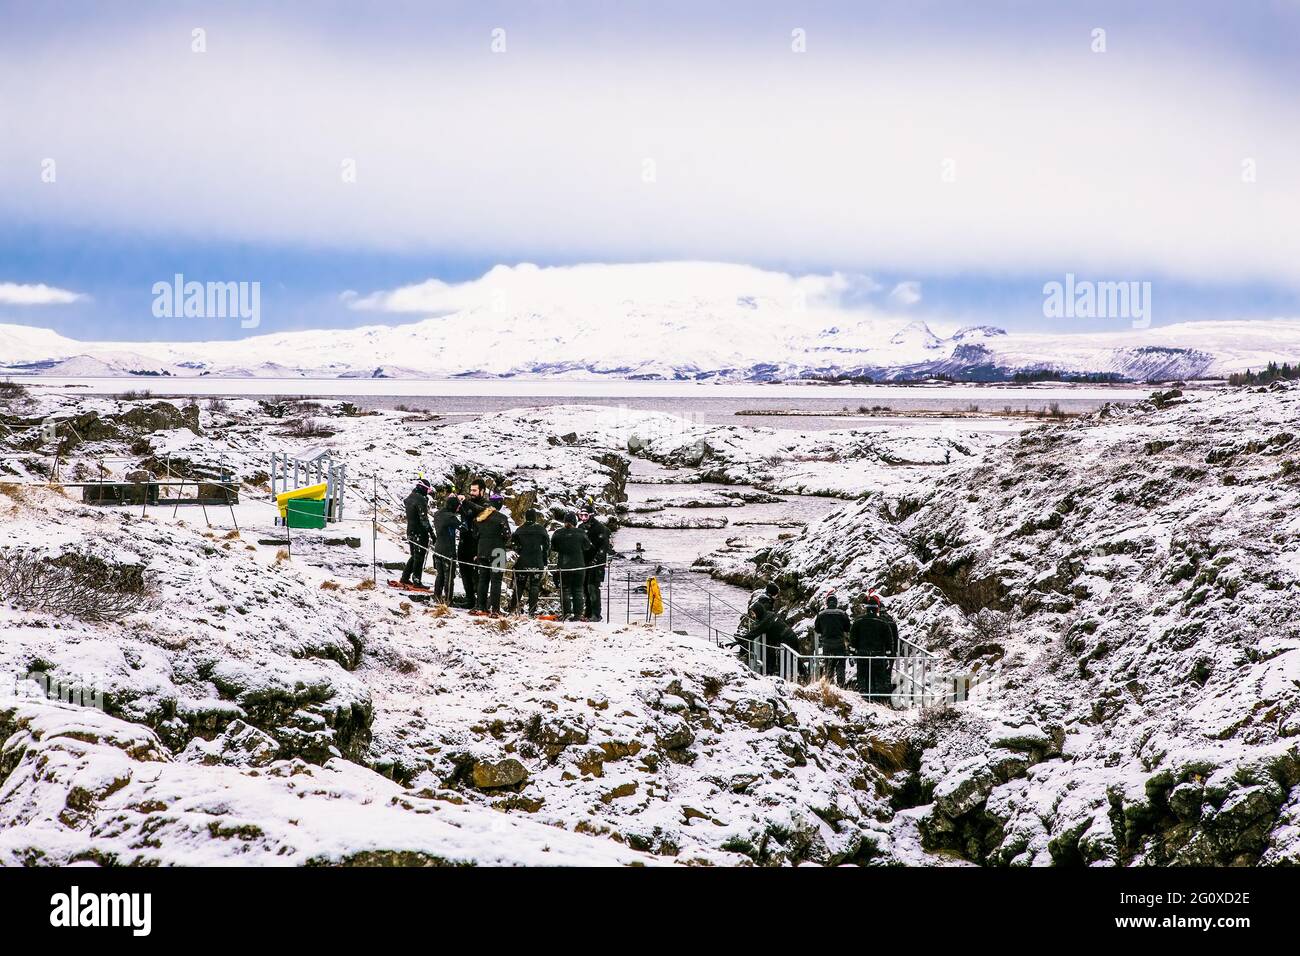 Silfra, Islande-fév 19, 2020: Des plongeurs se préparant à entrer dans l'eau à Silfra Rift, le lieu où l'eurasien et la plaque tectonique américaine a Banque D'Images